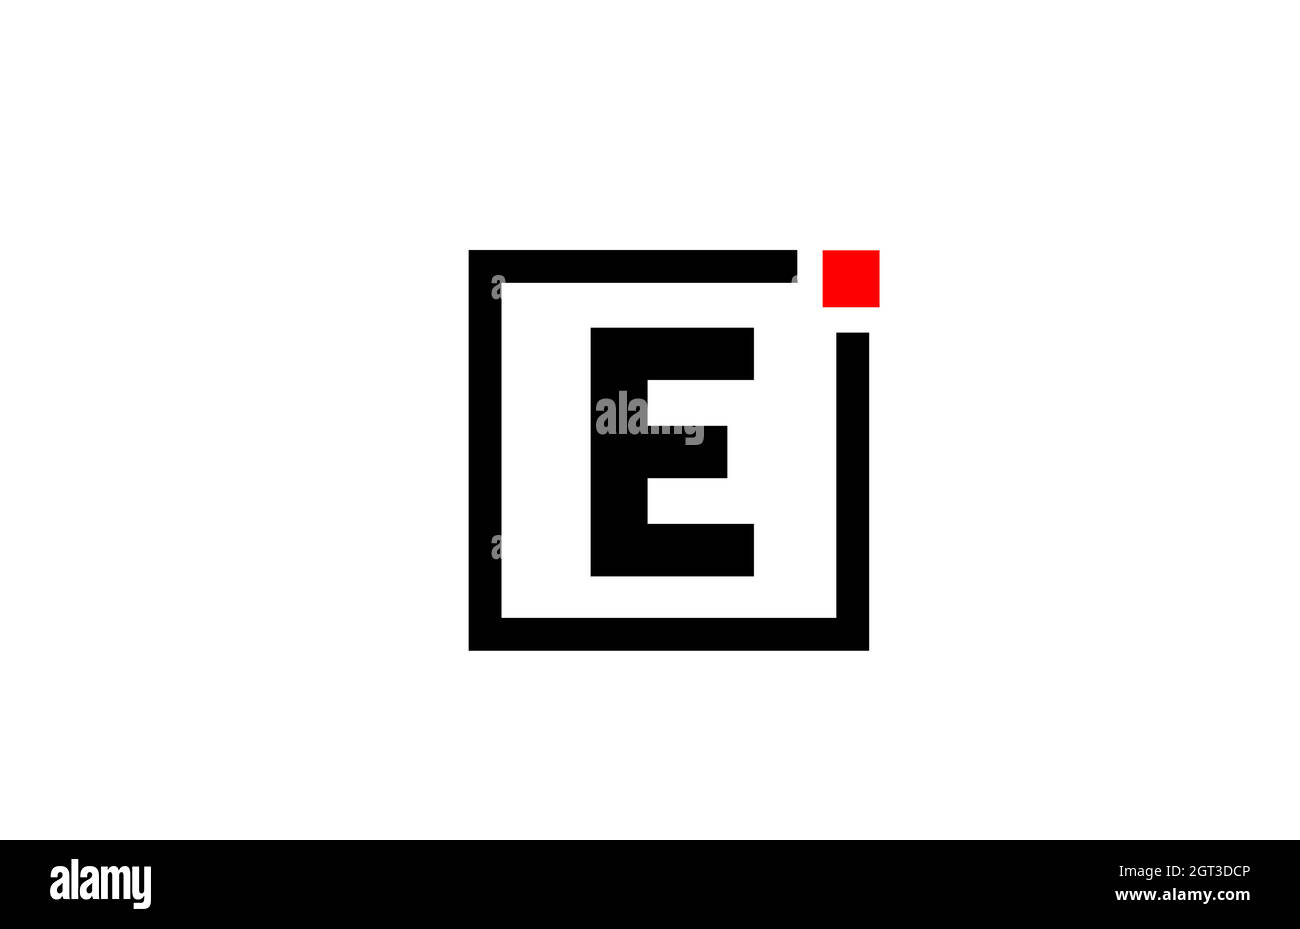 E icona del logo con lettera alfabetica in bianco e nero. Design aziendale e aziendale con punto quadrato e rosso. Modello di identità aziendale creativo Illustrazione Vettoriale